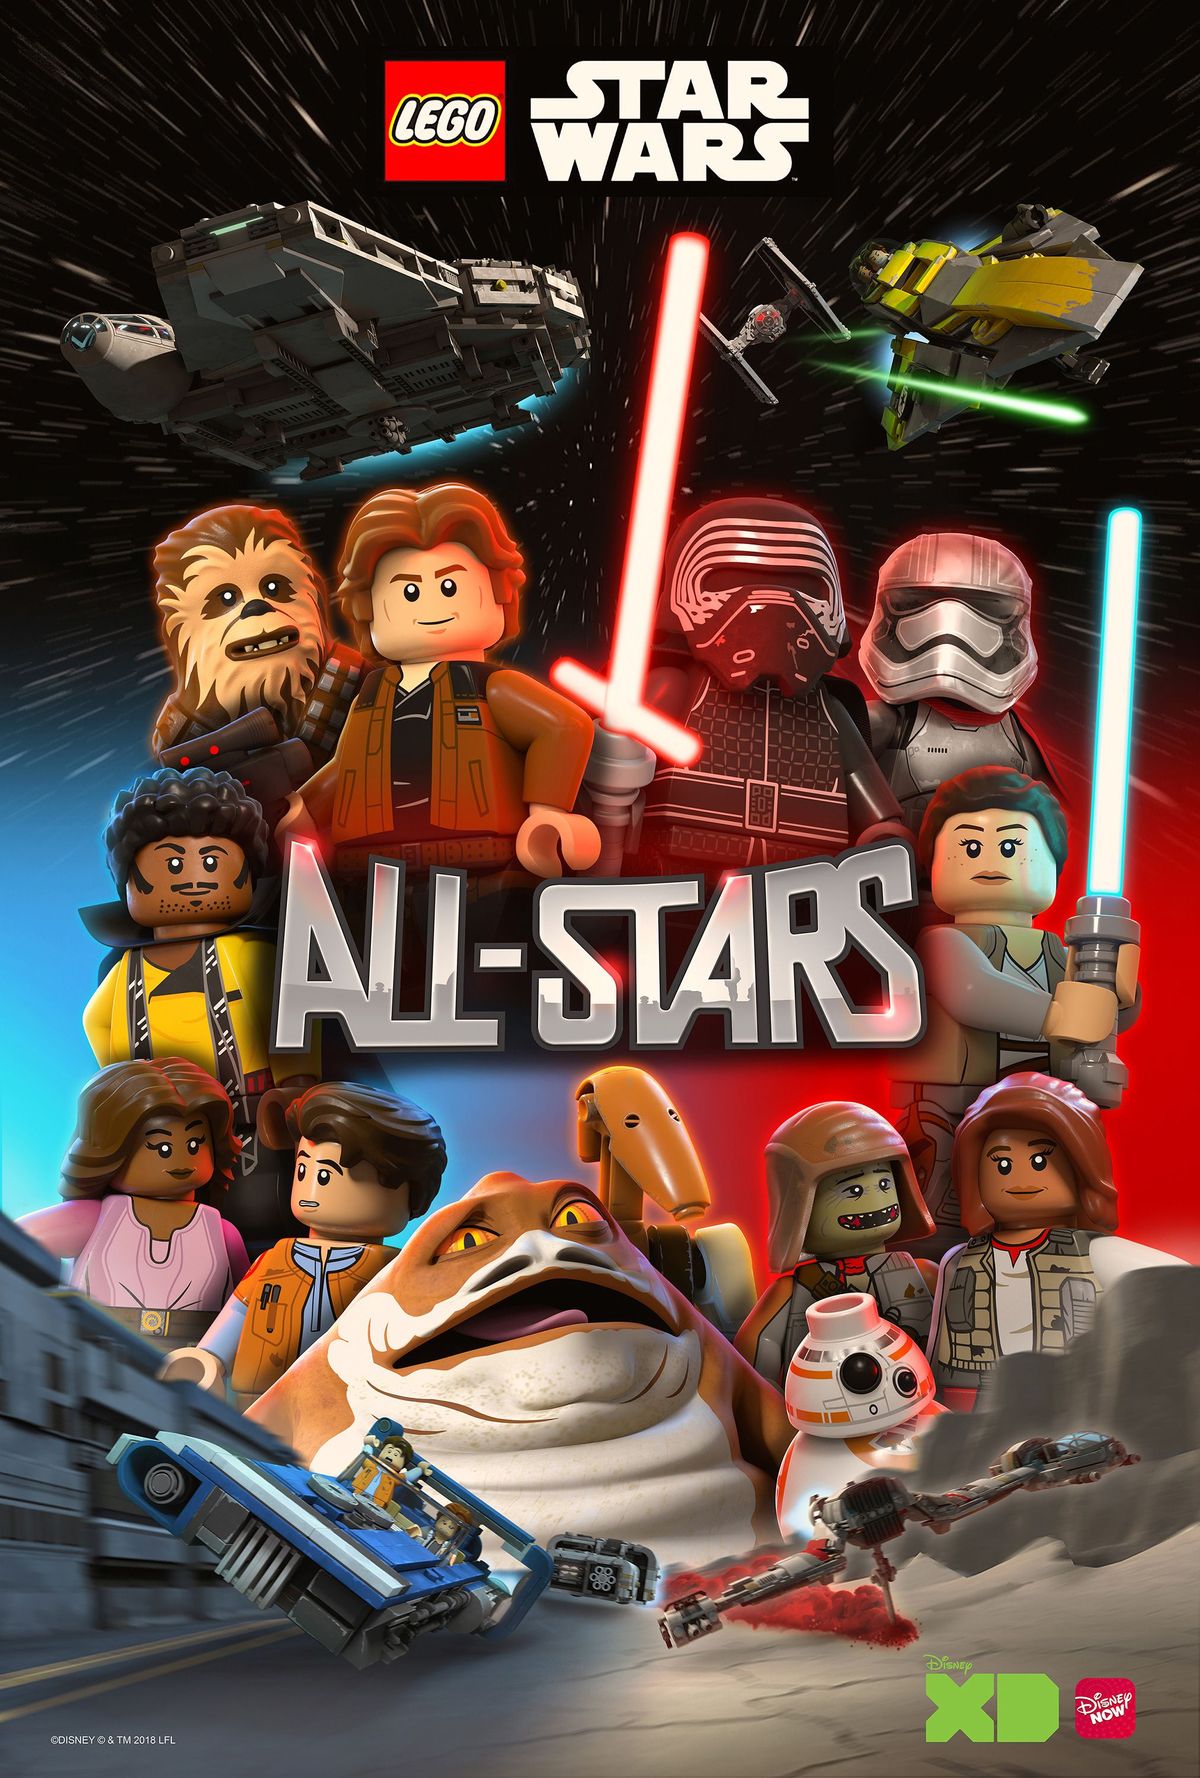 LEGO Star Wars Baru: Seri Animasi All-Stars untuk Mencakup Setiap Era Waralaba